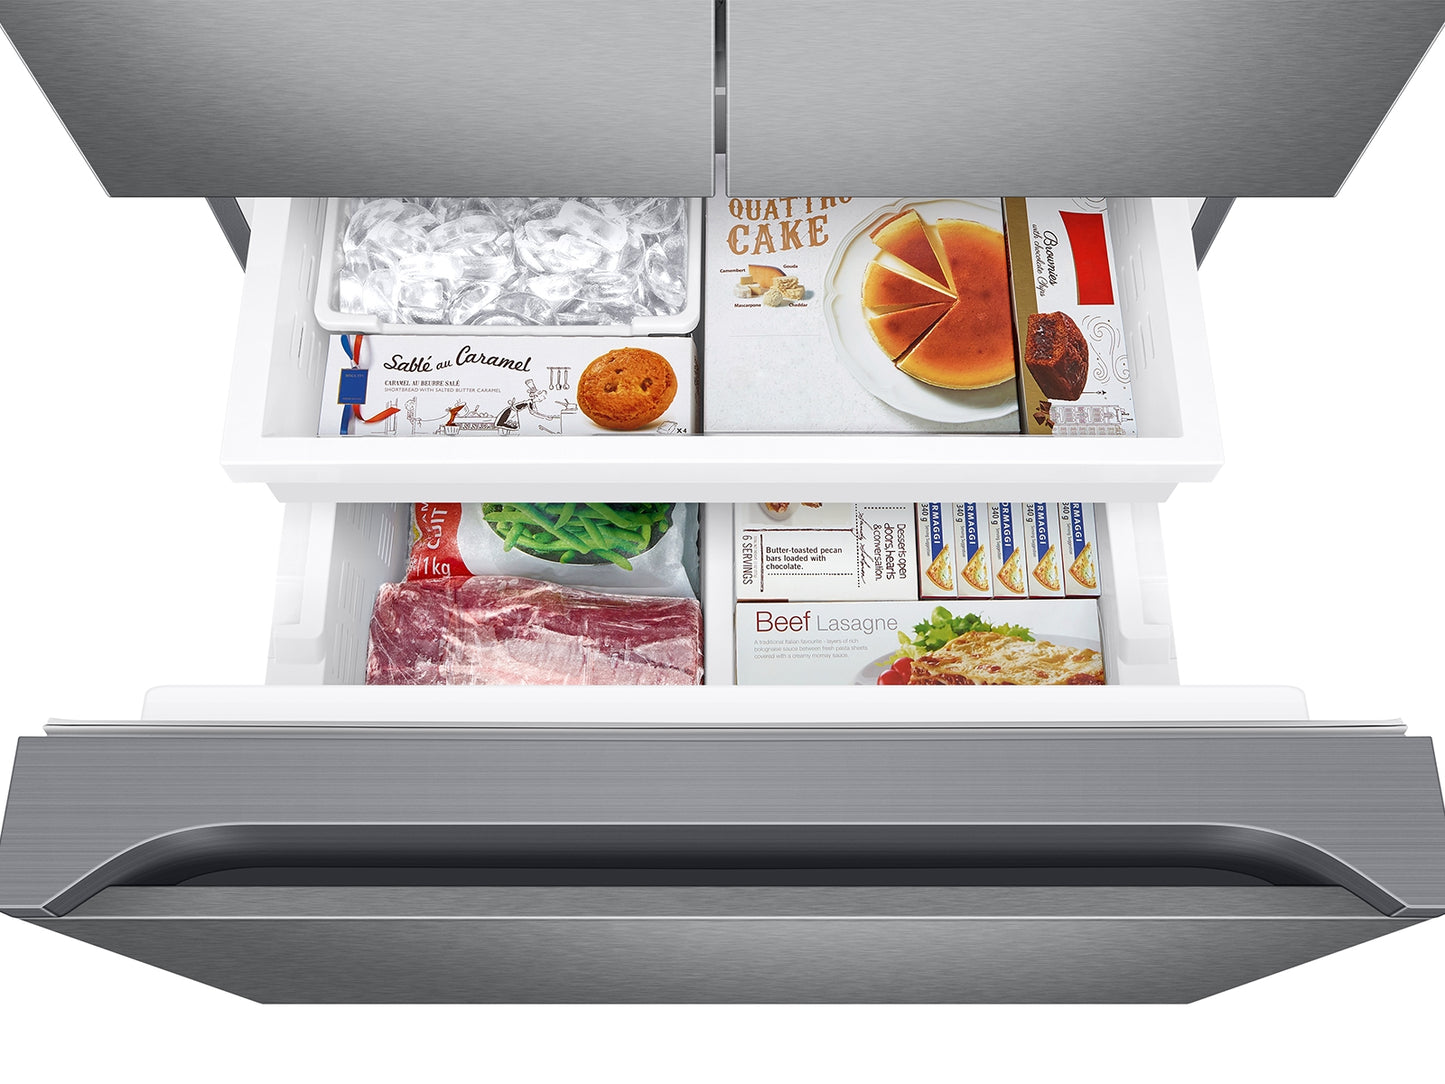 Samsung 22 cu. ft. Smart 3-Door French Door Refrigerator in Stainless Steel